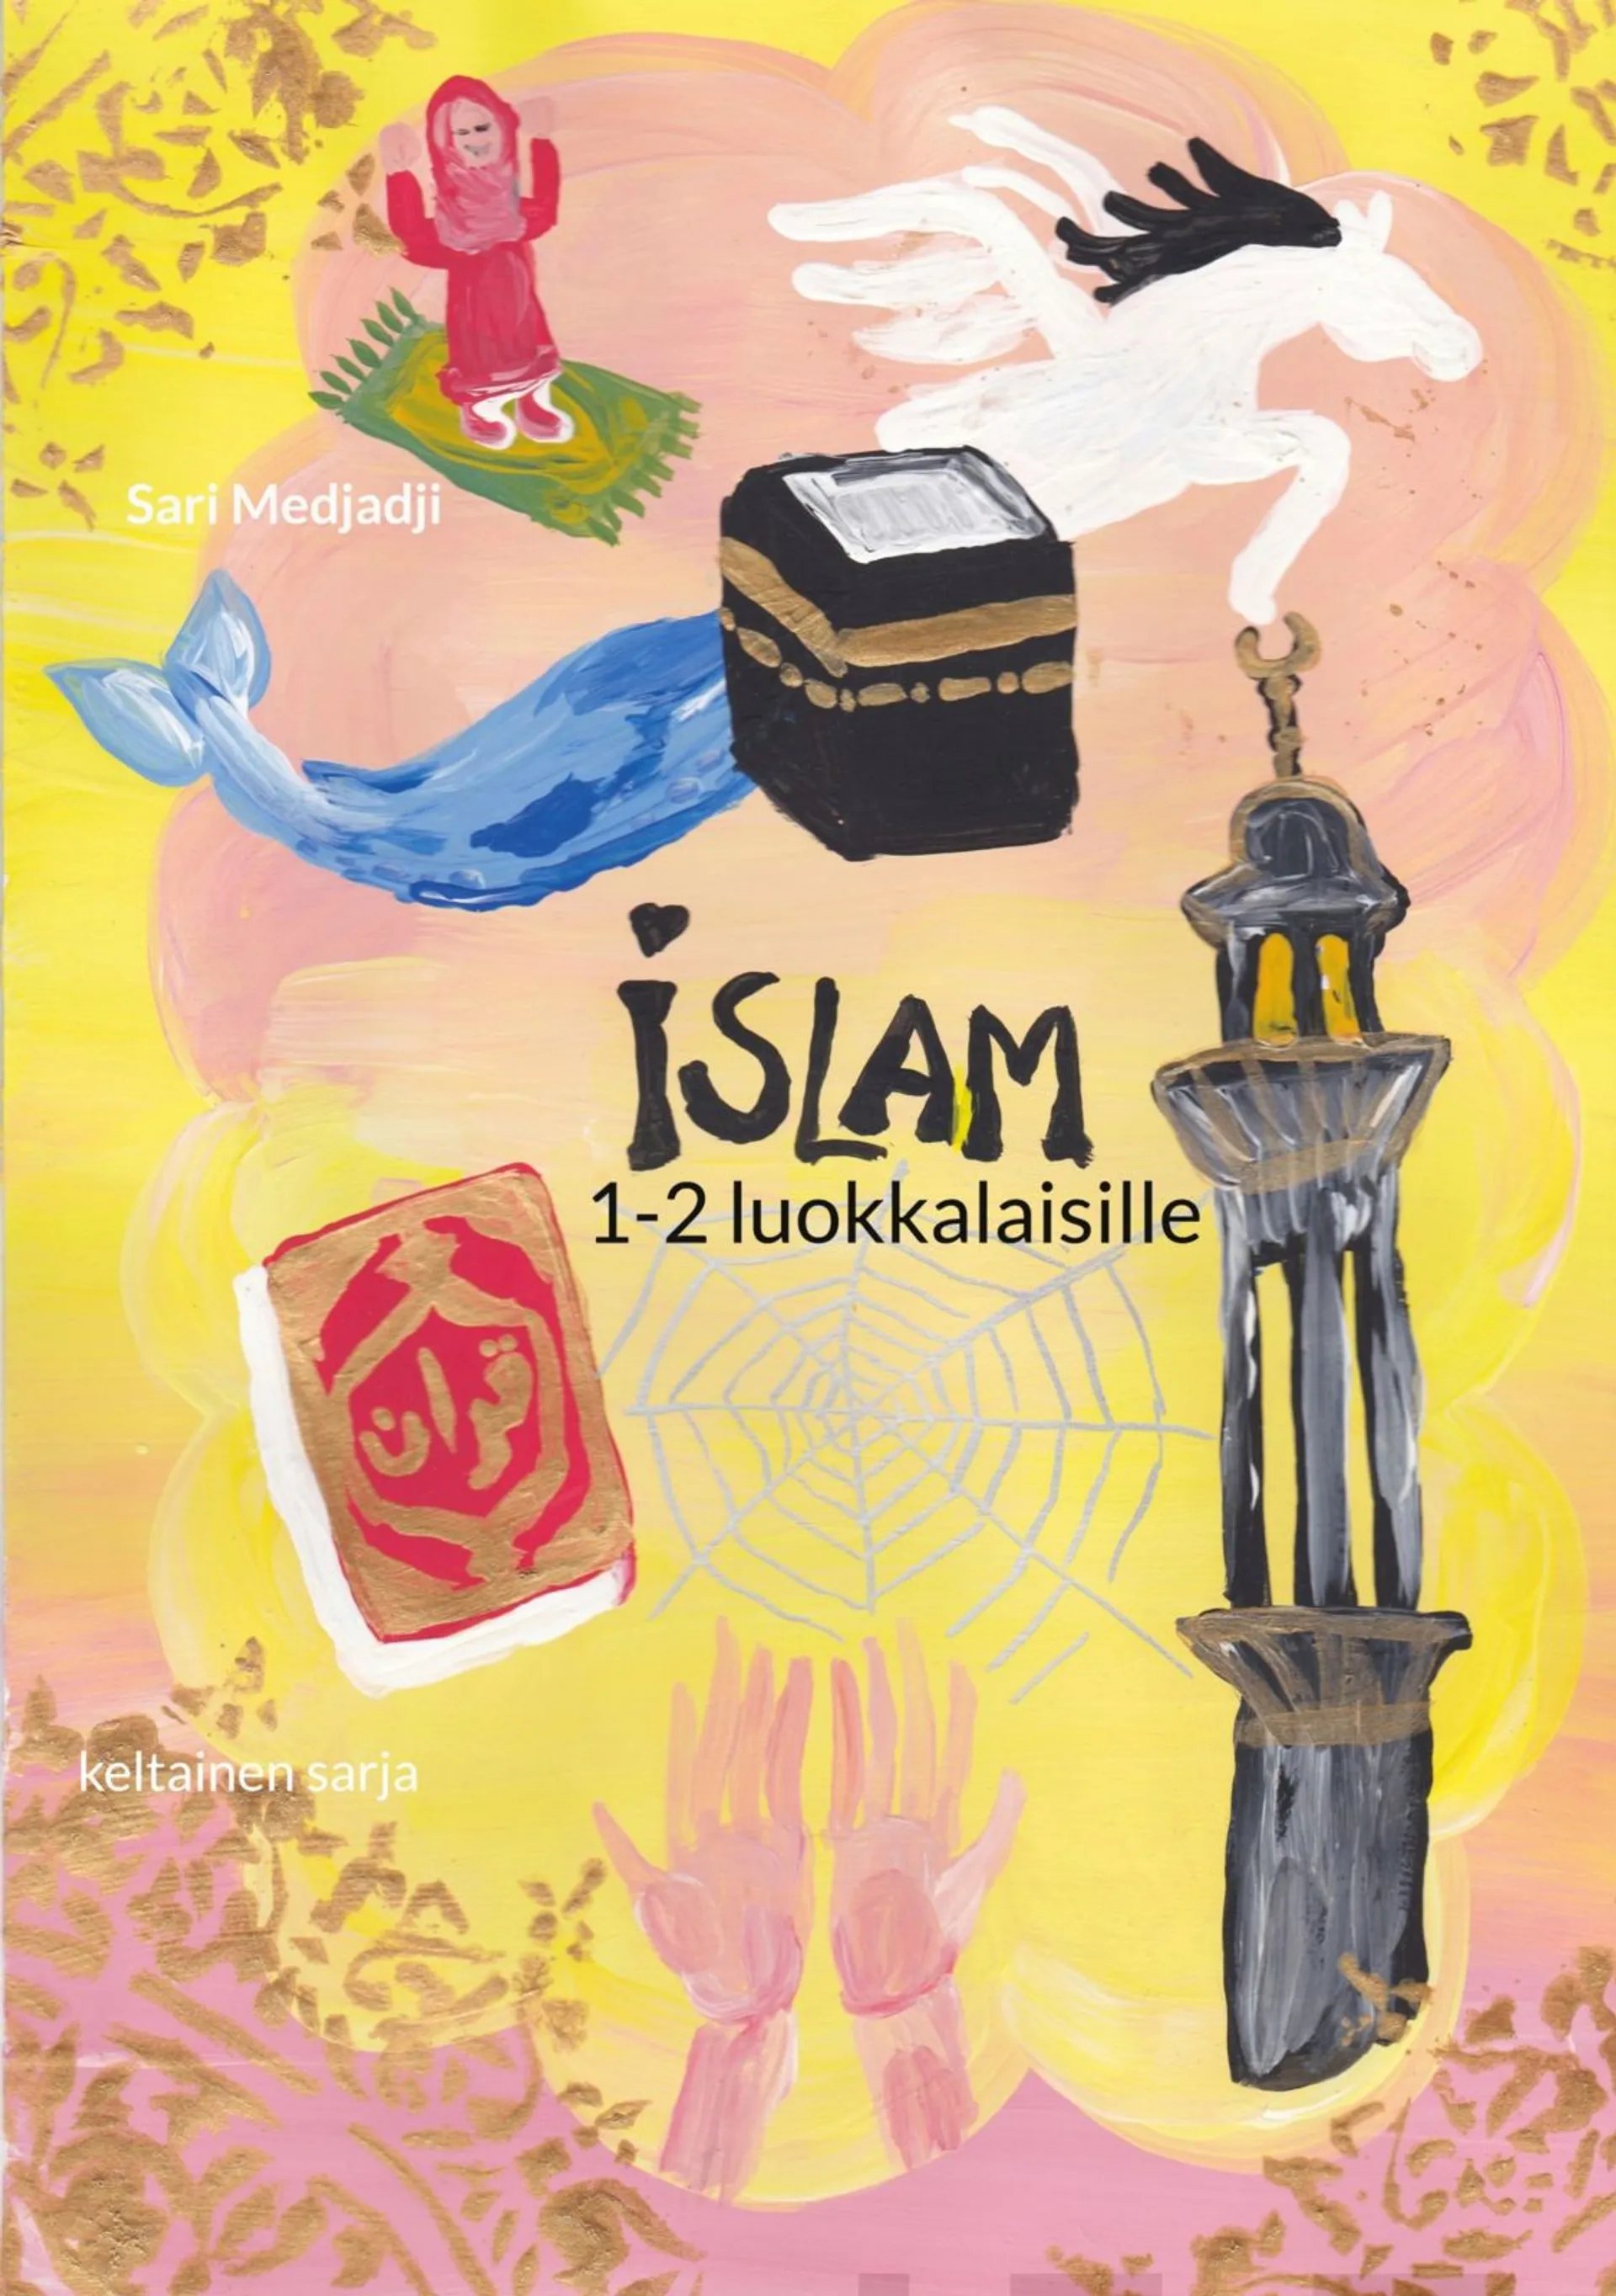 Medjadji, Islam 1-2 luokkalaisille - Keltainen sarja